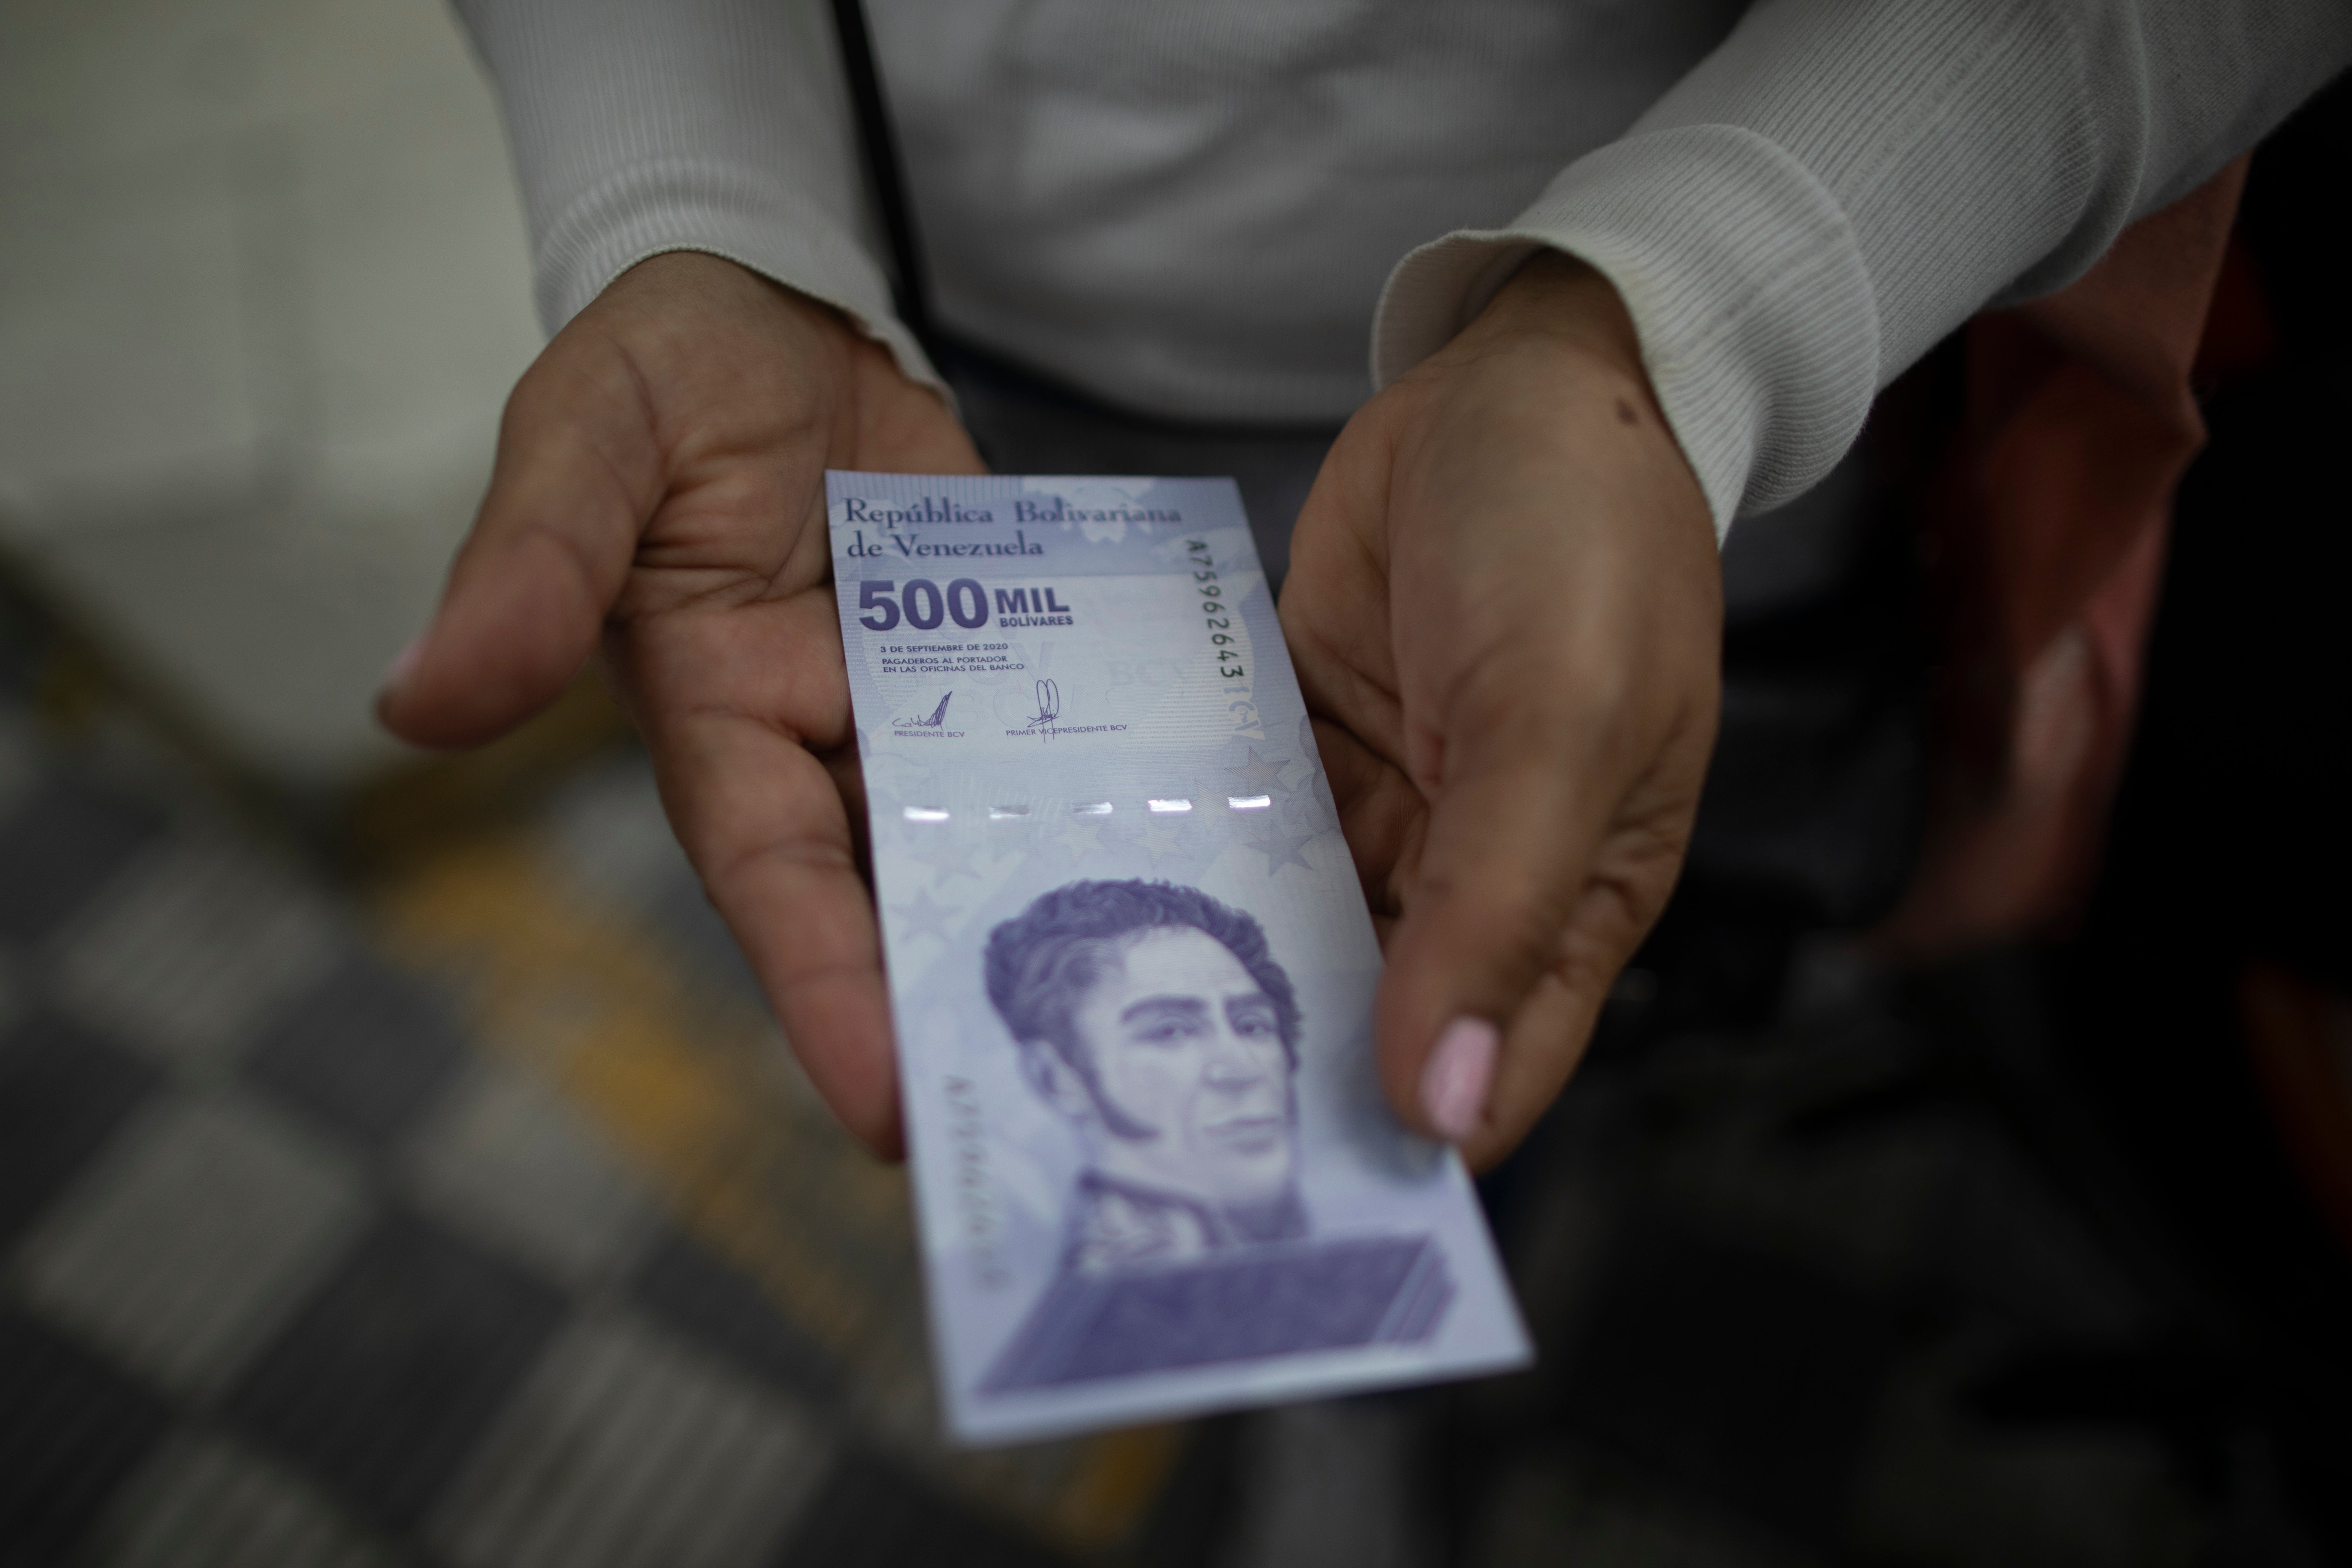 Venezuela Currency